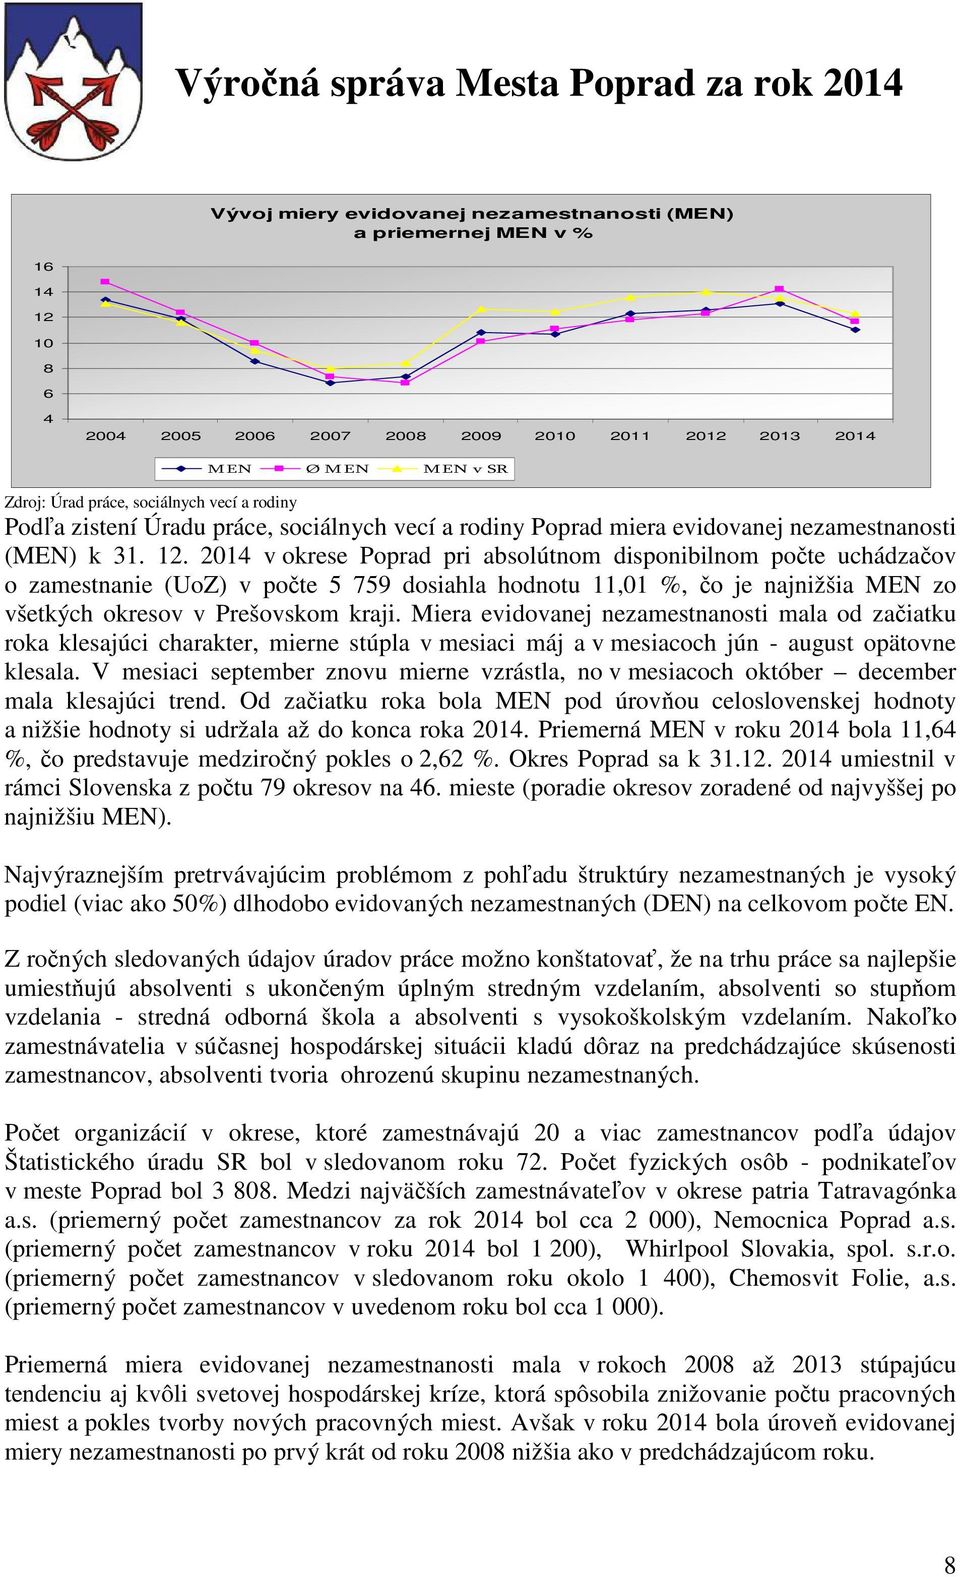 2014 v okrese Poprad pri absolútnom disponibilnom počte uchádzačov o zamestnanie (UoZ) v počte 5 759 dosiahla hodnotu 11,01 %, čo je najnižšia MEN zo všetkých okresov v Prešovskom kraji.